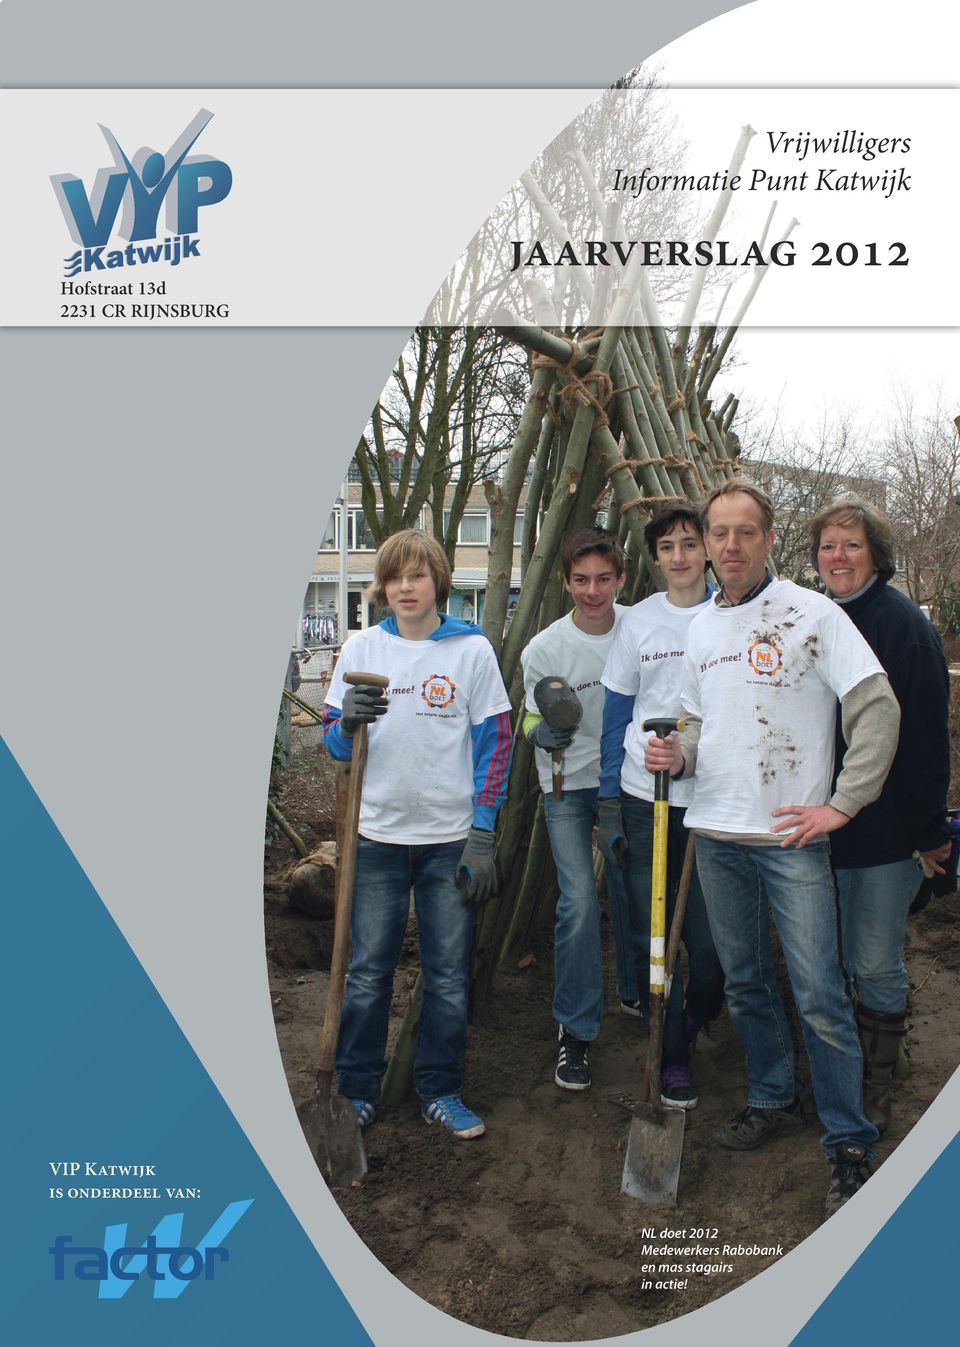 2012 VIP Katwijk is onderdeel van: NL doet